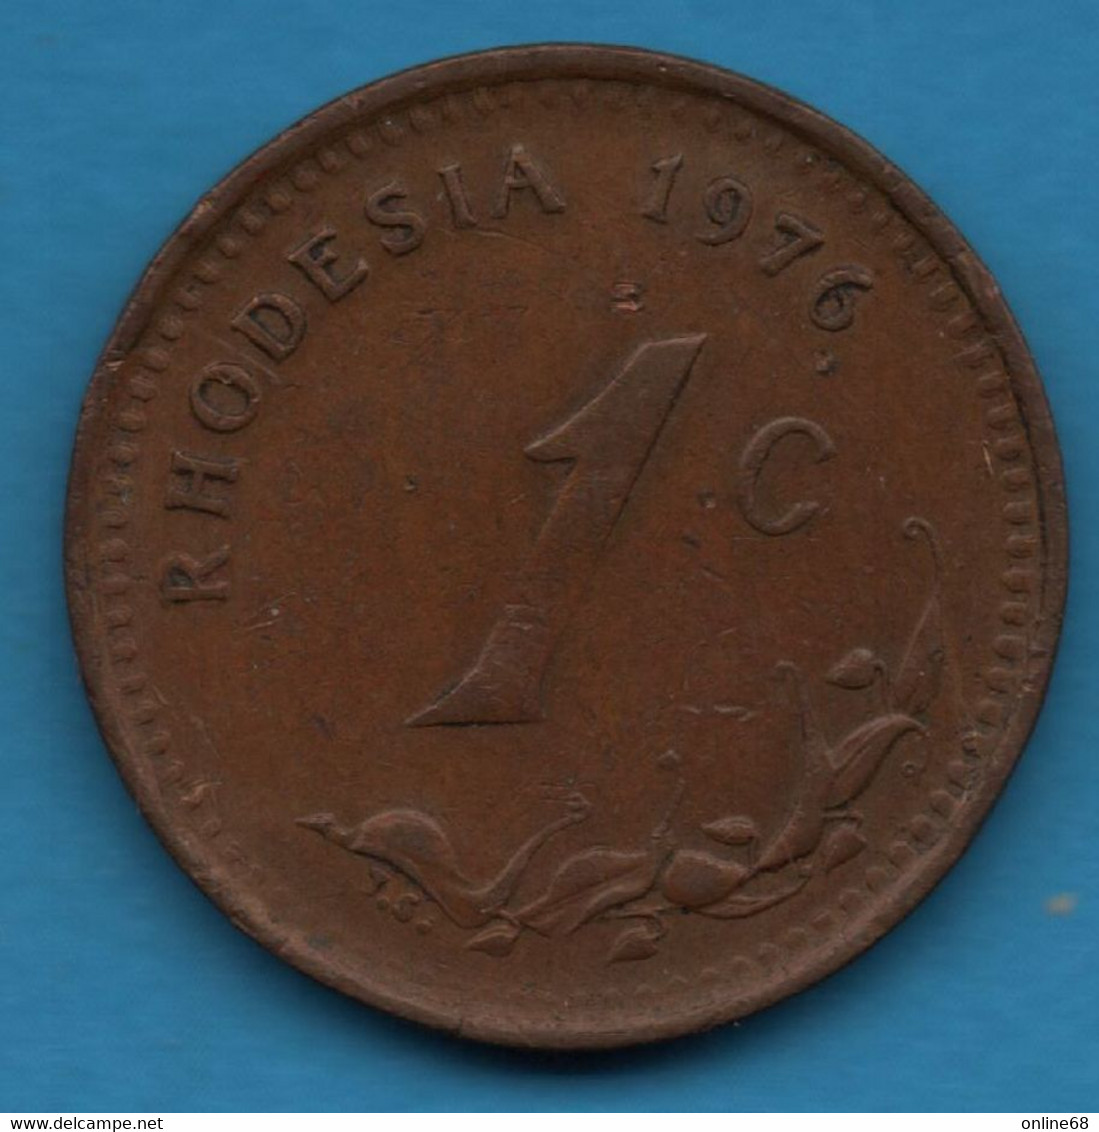 RHODESIA 1 CENT 1976 KM# 10 - Rhodesia